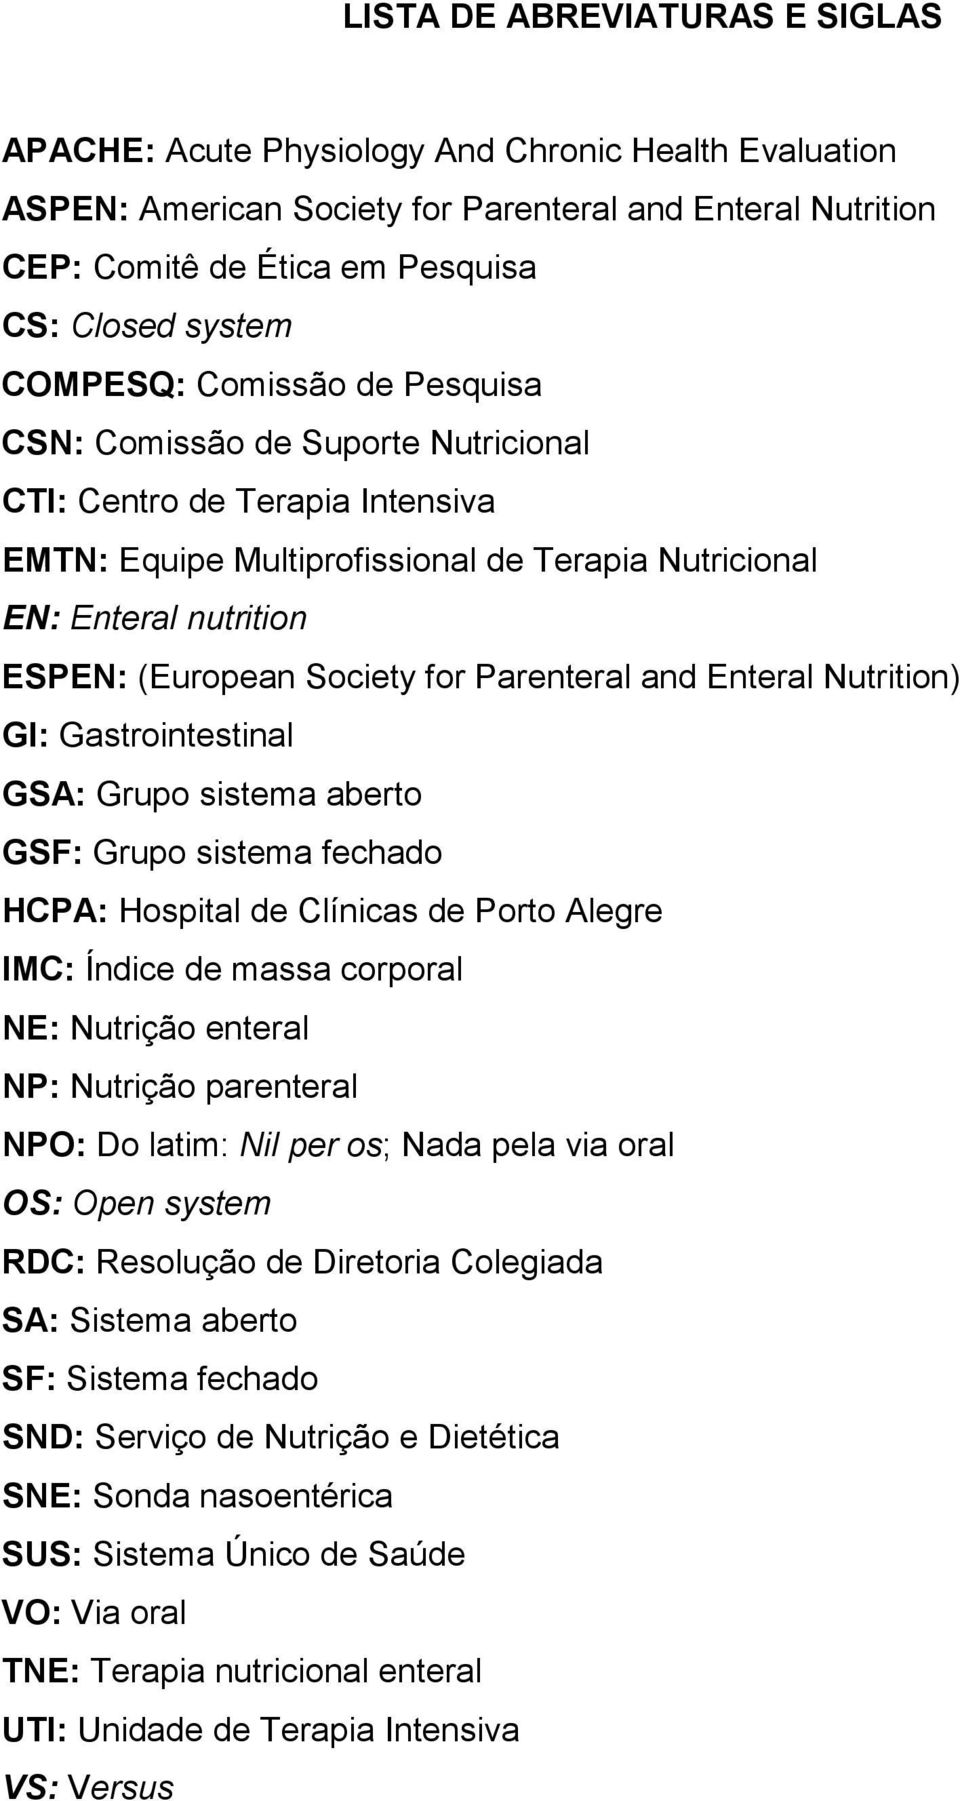 Society for Parenteral and Enteral Nutrition) GI: Gastrointestinal GSA: Grupo sistema aberto GSF: Grupo sistema fechado HCPA: Hospital de Clínicas de Porto Alegre IMC: Índice de massa corporal NE: